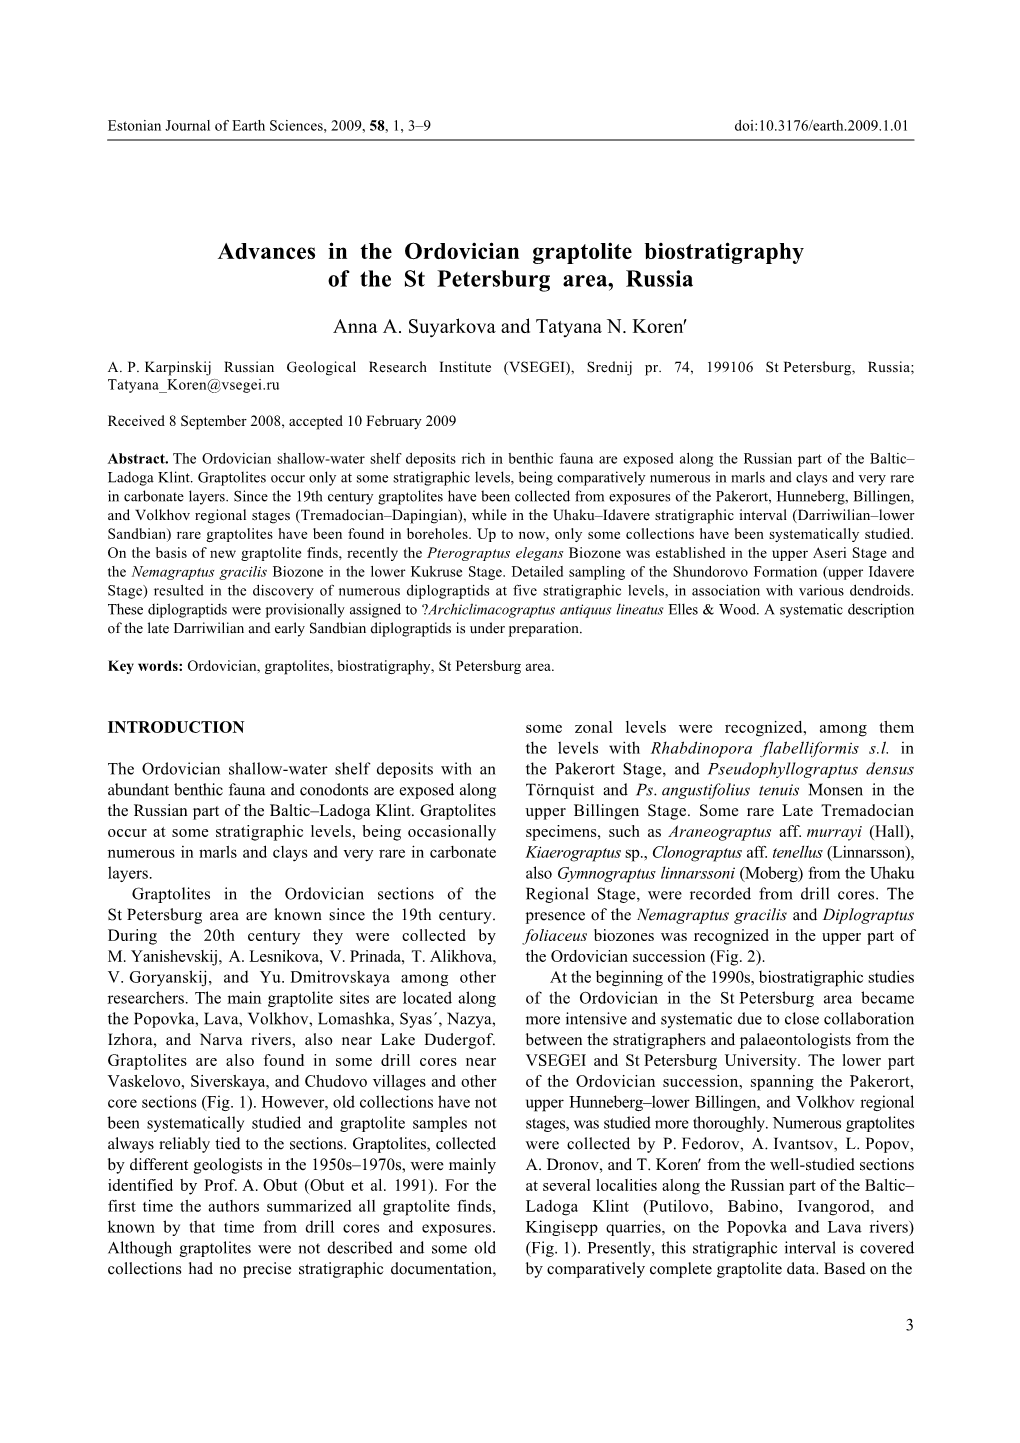 Advances in the Ordovician Graptolite Biostratigraphy of the St Petersburg Area, Russia